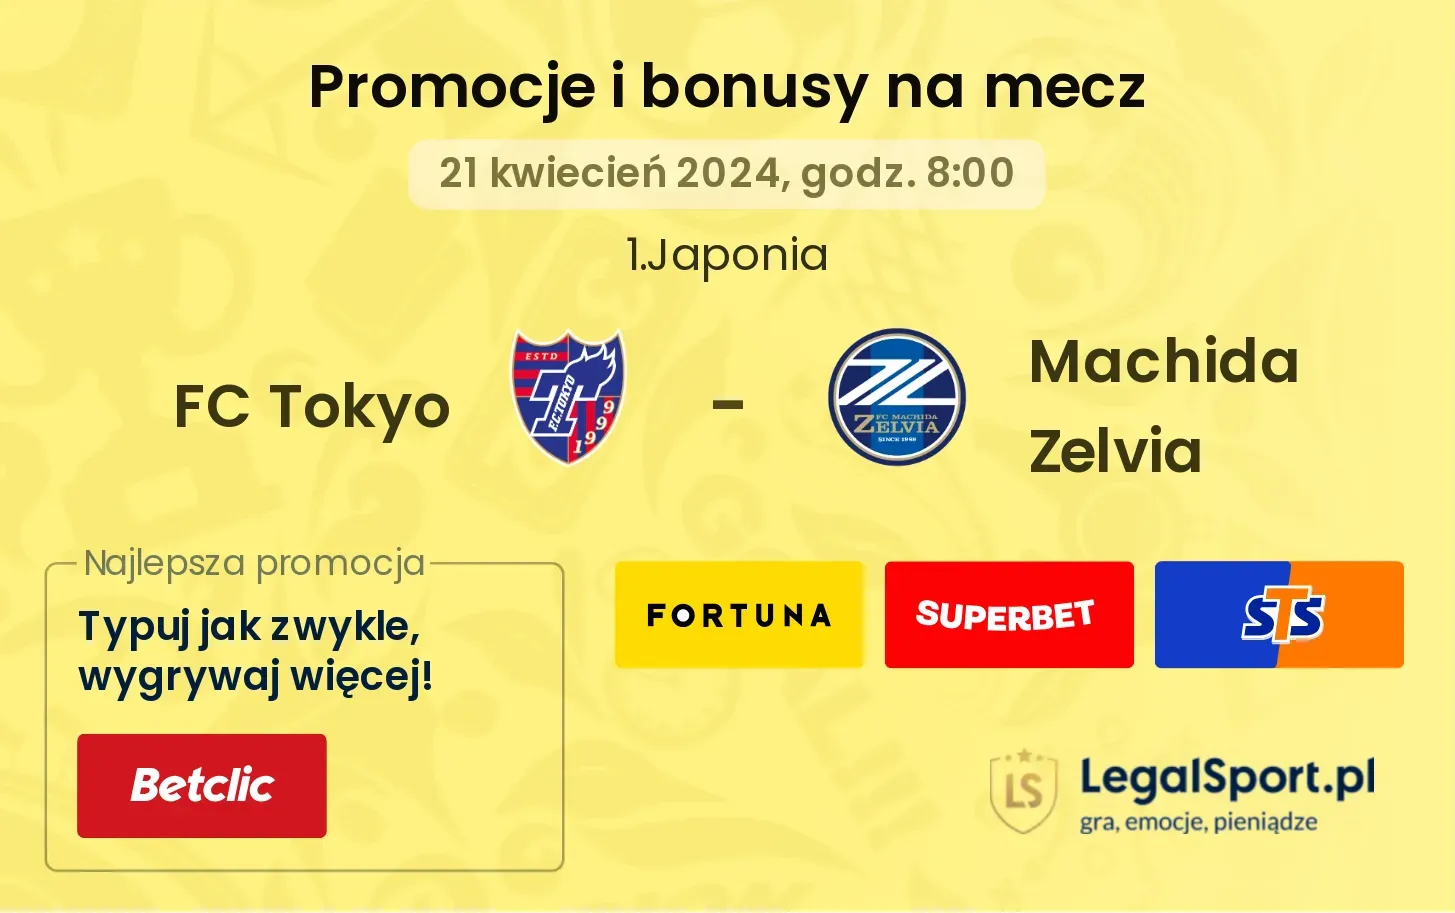 FC Tokyo - Machida Zelvia promocje bonusy na mecz